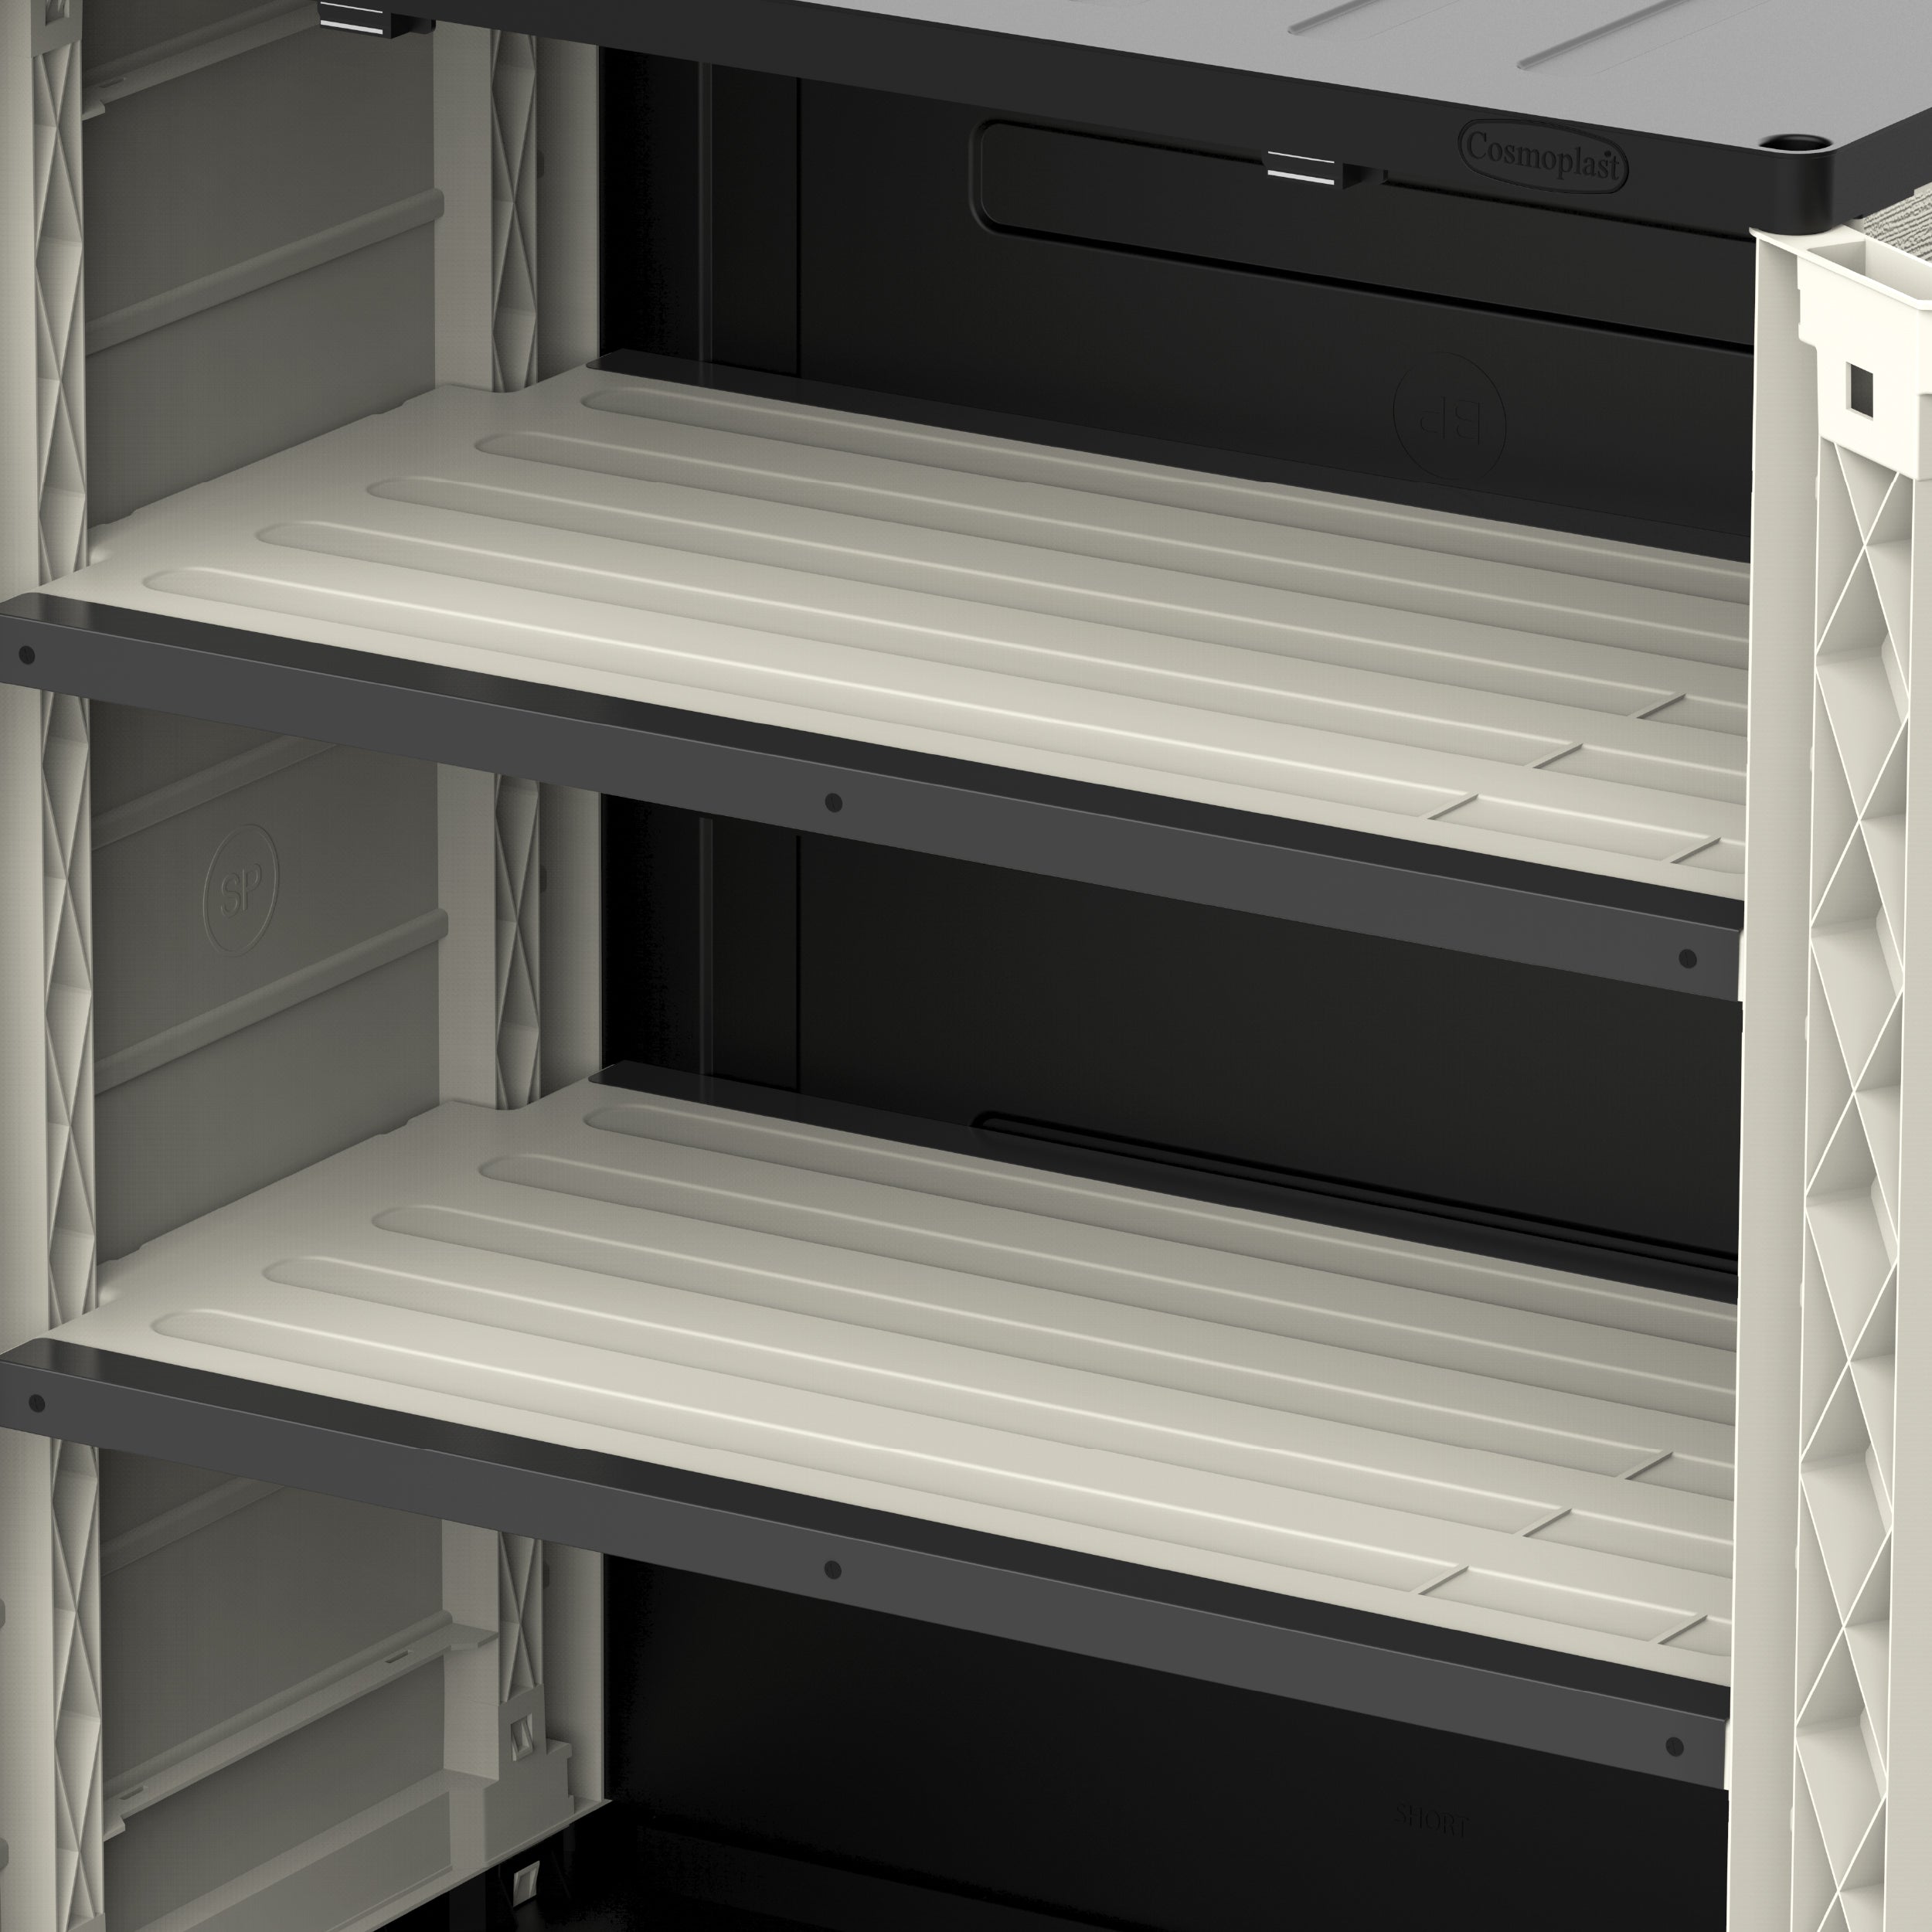 Cedargrain Vertical Storage Short Cabinet